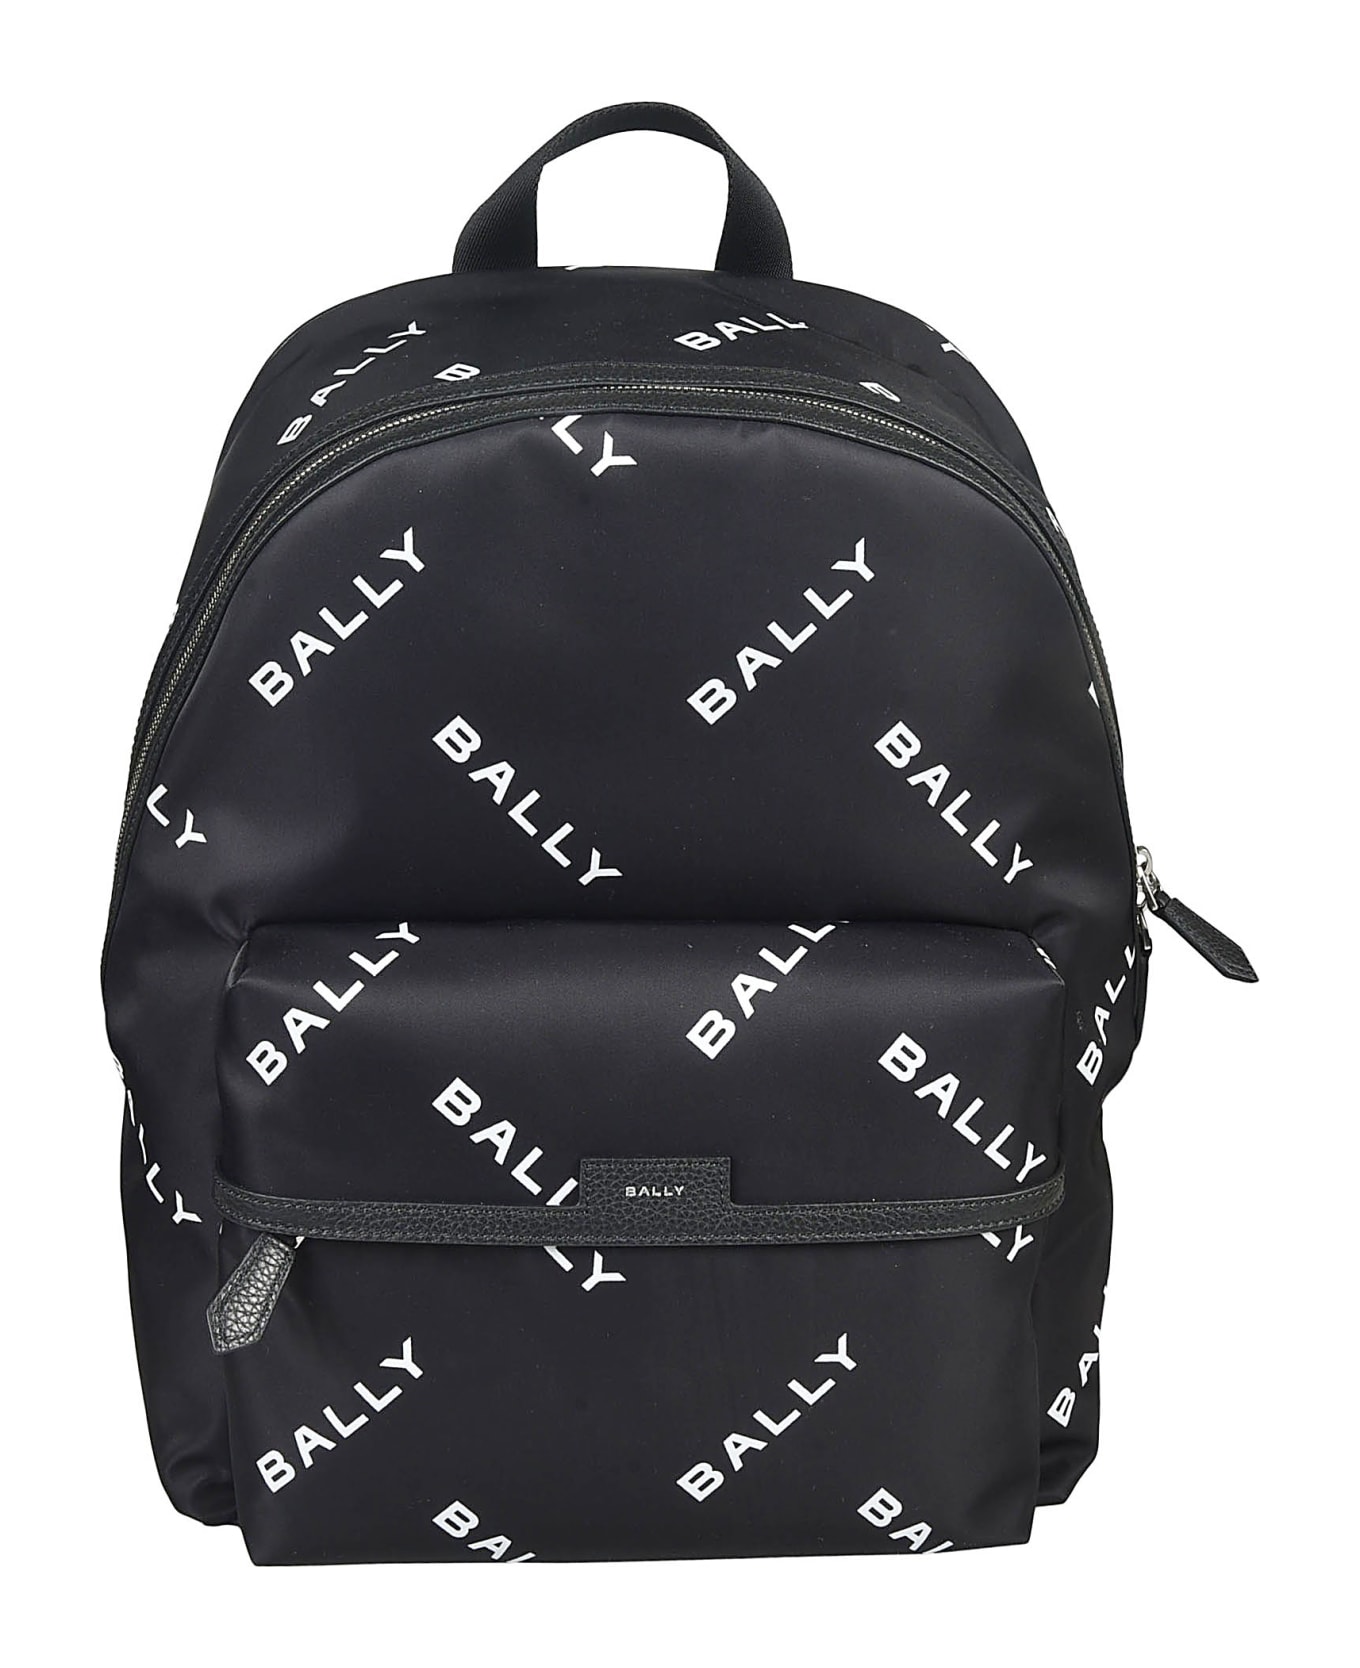 Bally Code Backpack - Black/White